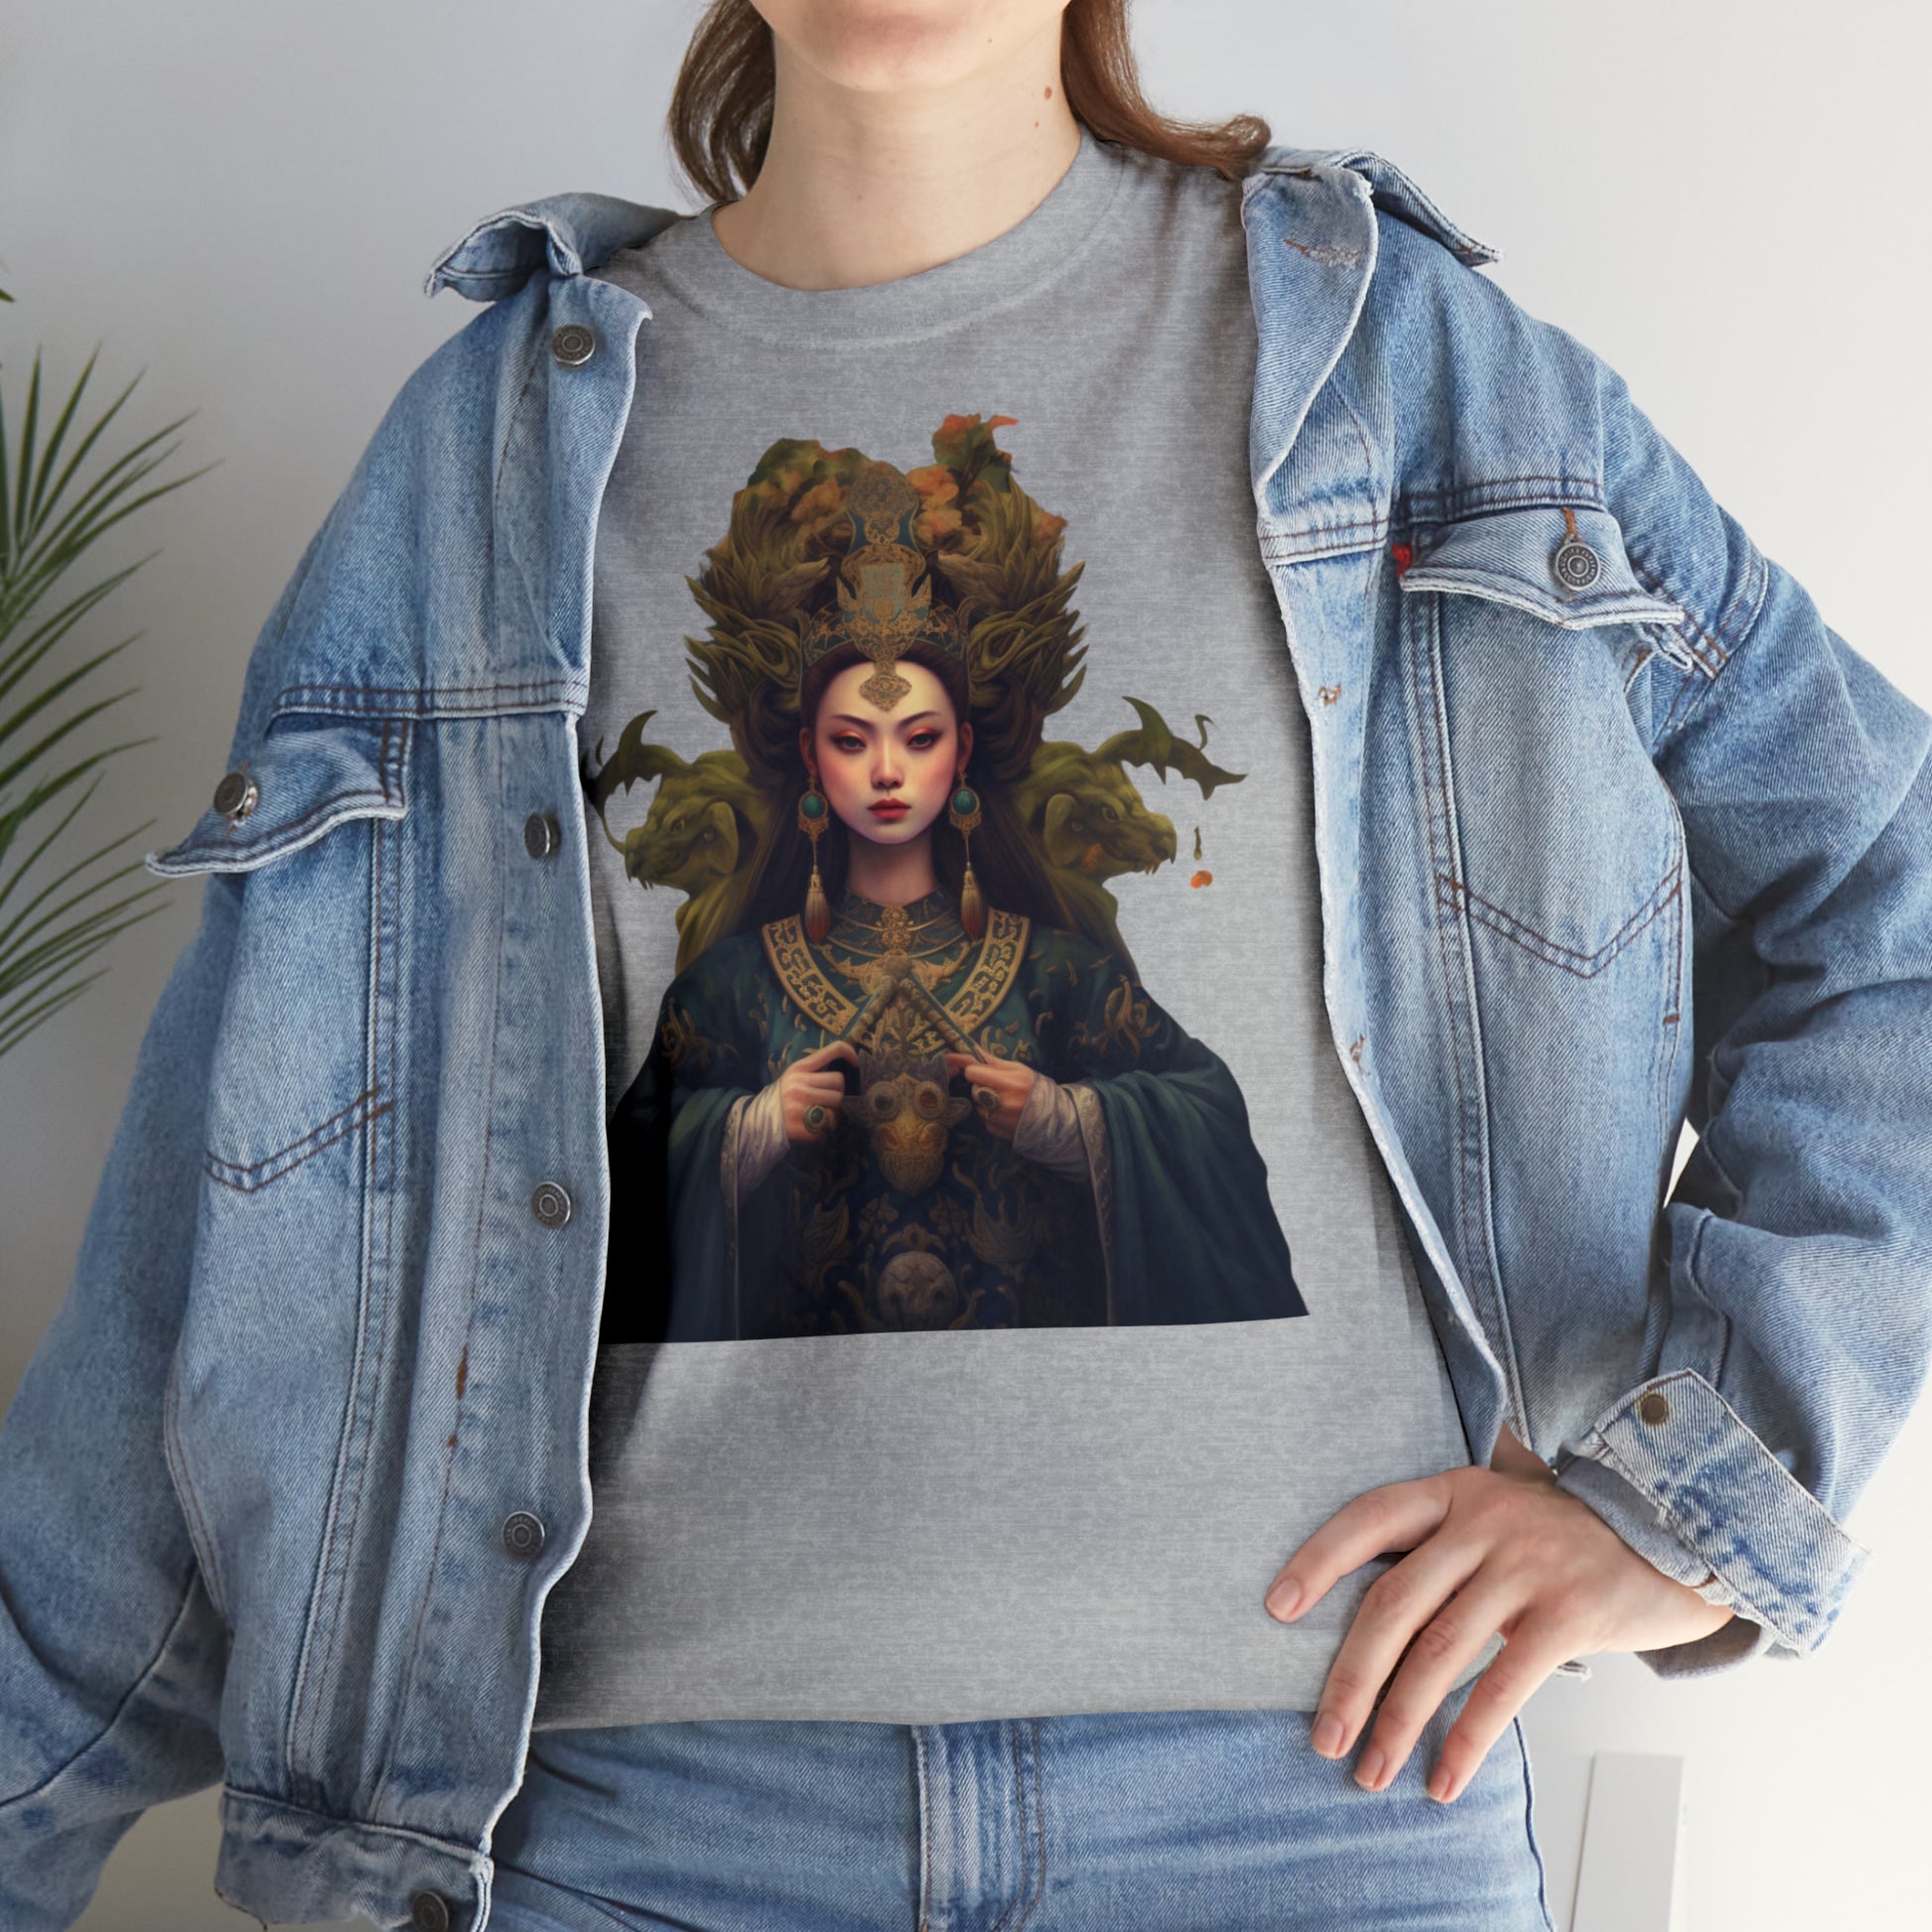 Quan Yin Goddess T-Shirt - Spiritual Tee, Guan Yin, Goddess of Compassion T-Shirt   